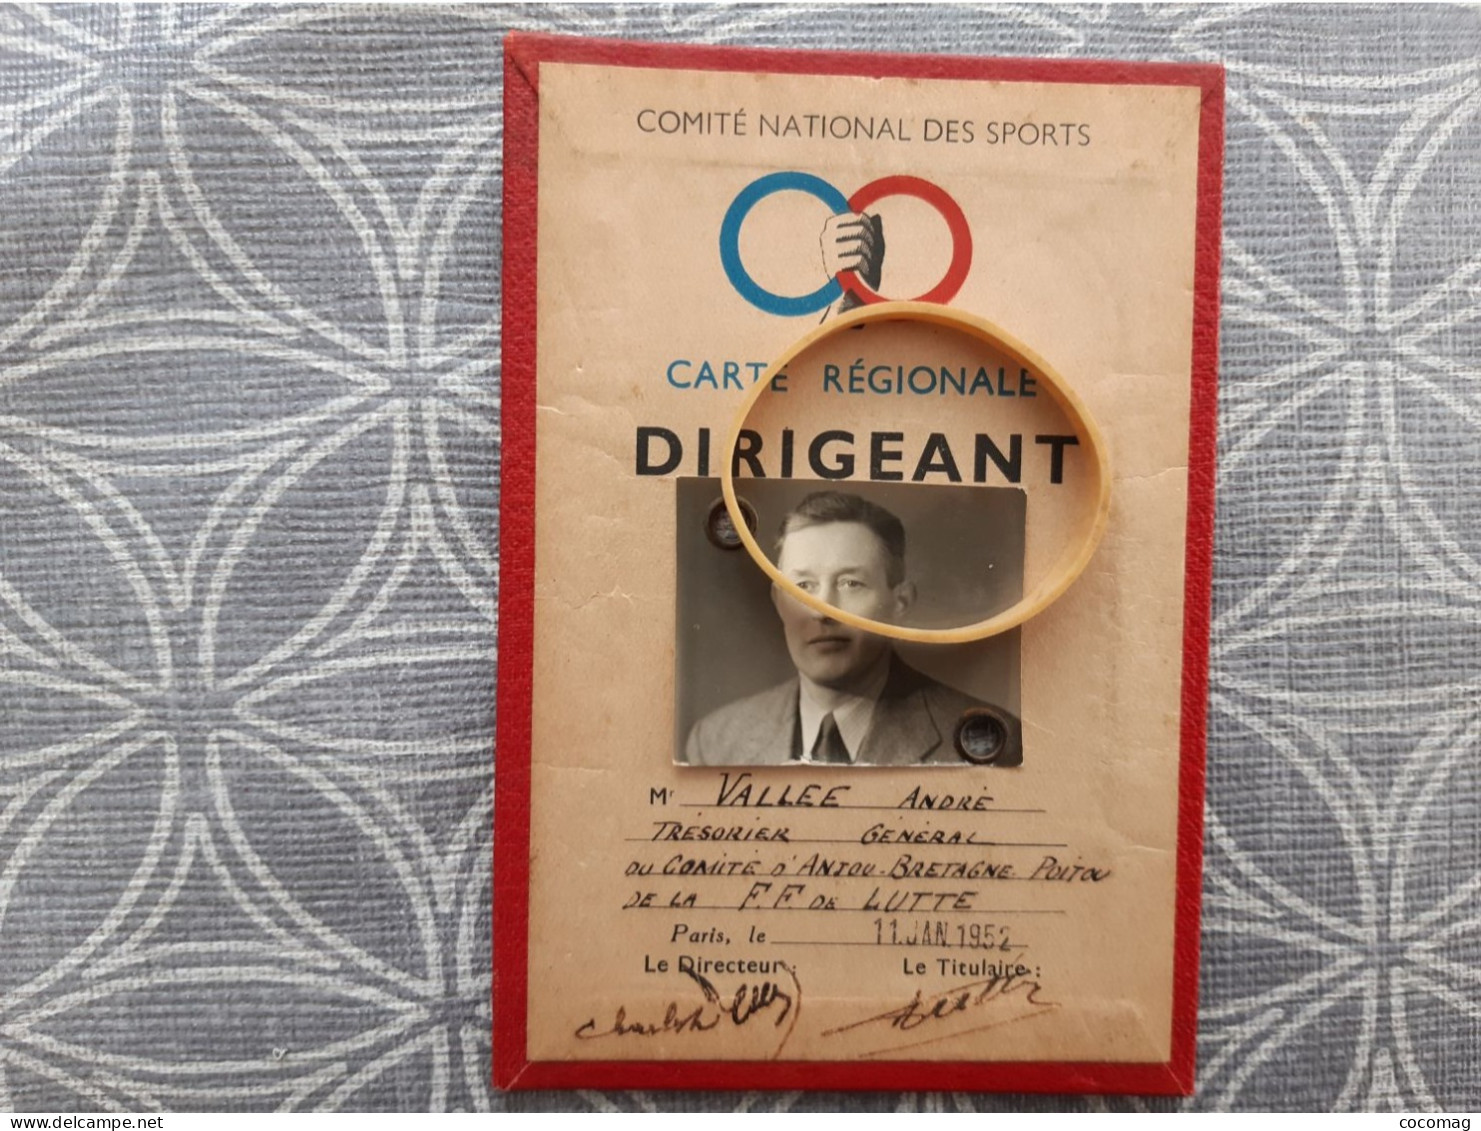 LUTTE CARTE REGIONALE DE DIRIGEANT  PERSONNAGE VALLEE ANDRE LUTTEUR TRESORIER GENERAL 1952 8.5 X 12.5 - Lutte